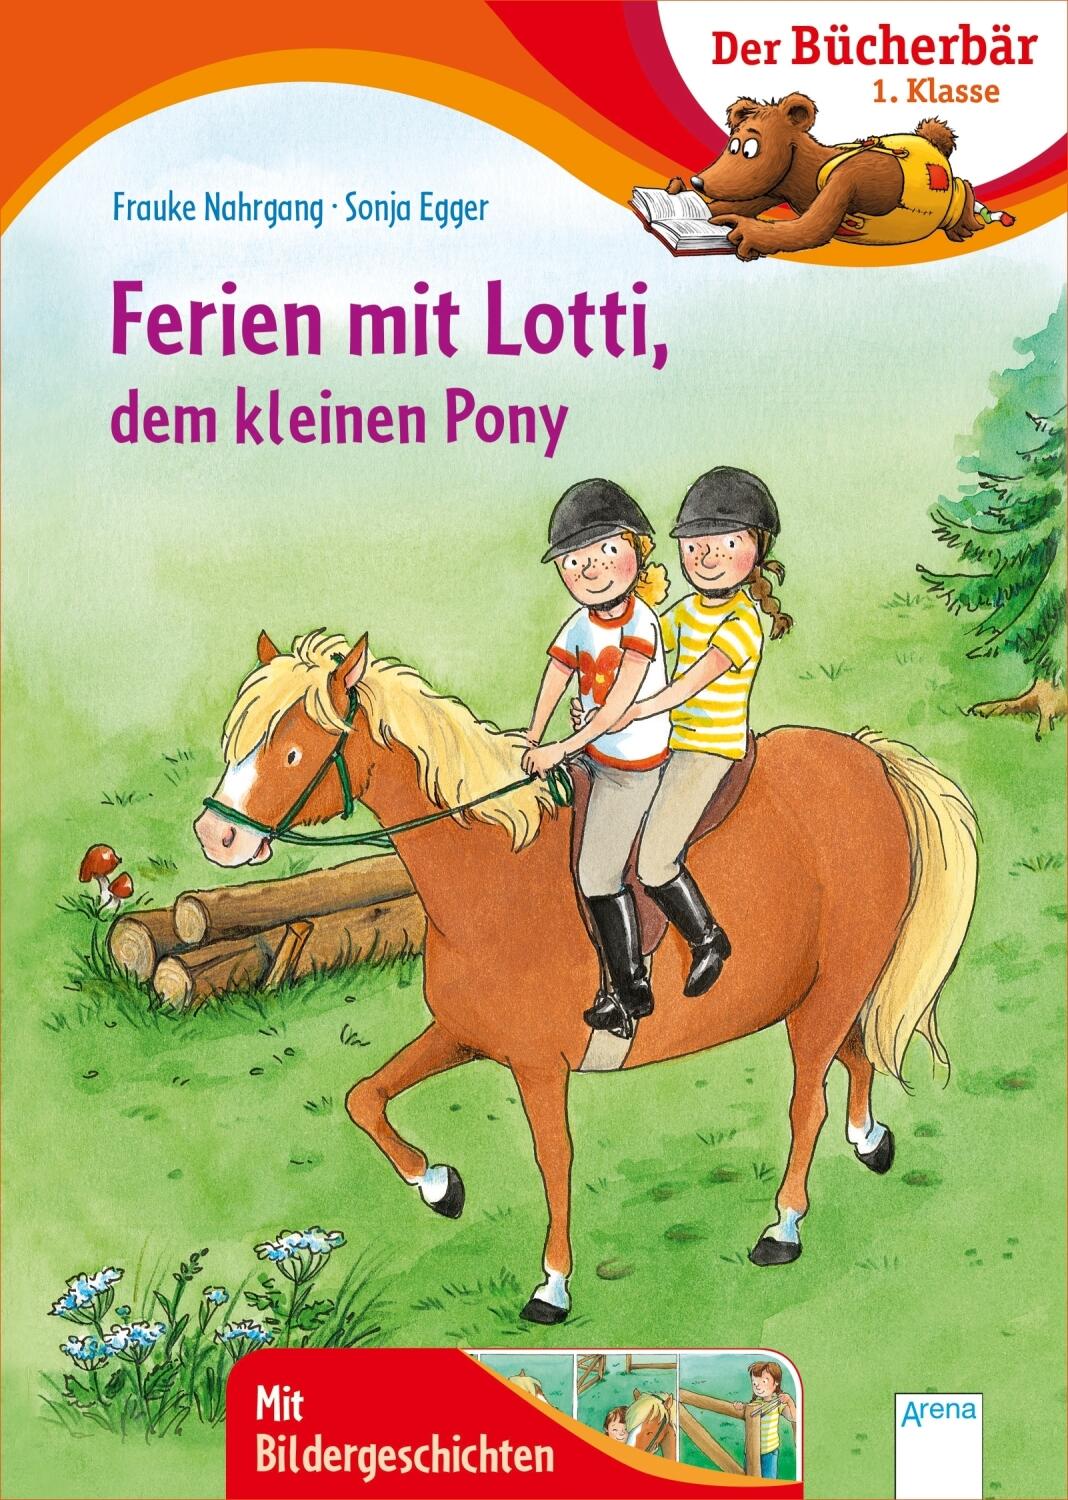 Der Bücherbär: Ferien mit Lotti, dem kleinen Pony - 1. Klasse